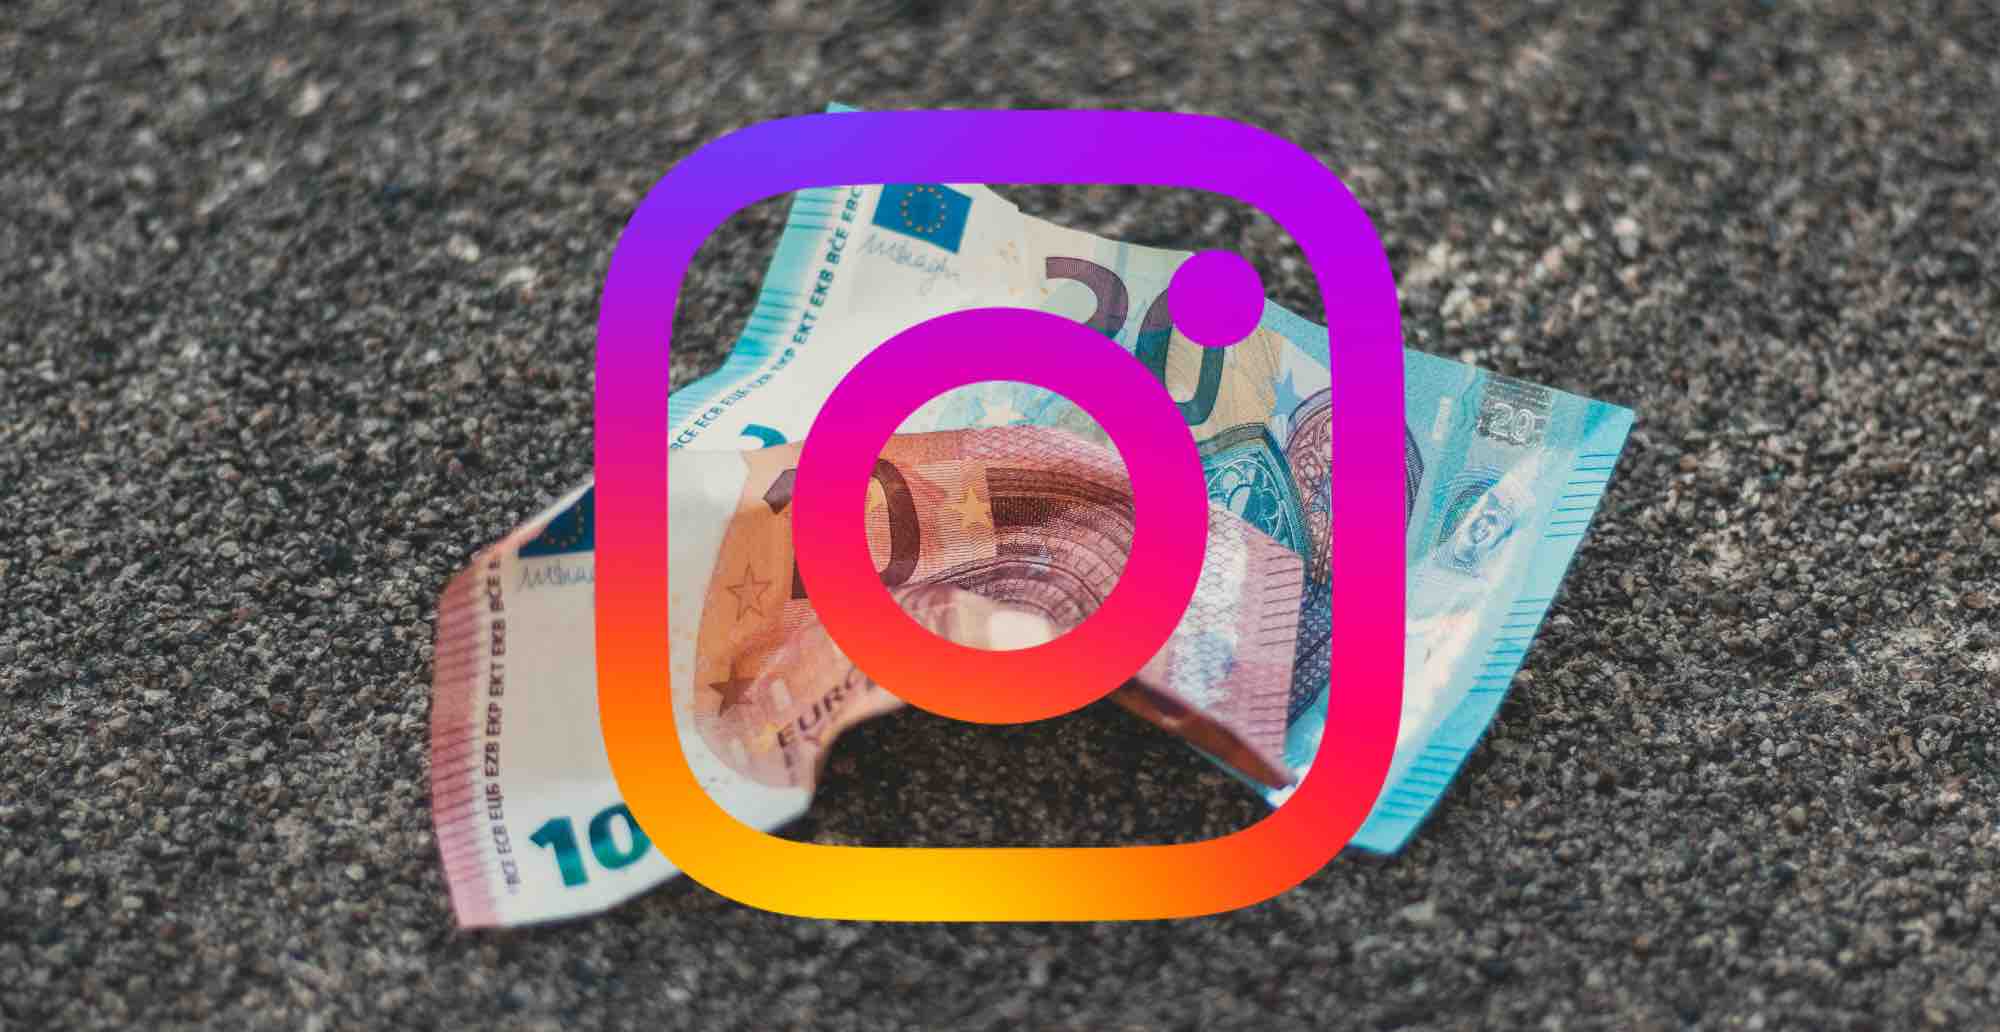 meta instagram facebook zonder reclame abonnement 10 13 euro per maan d